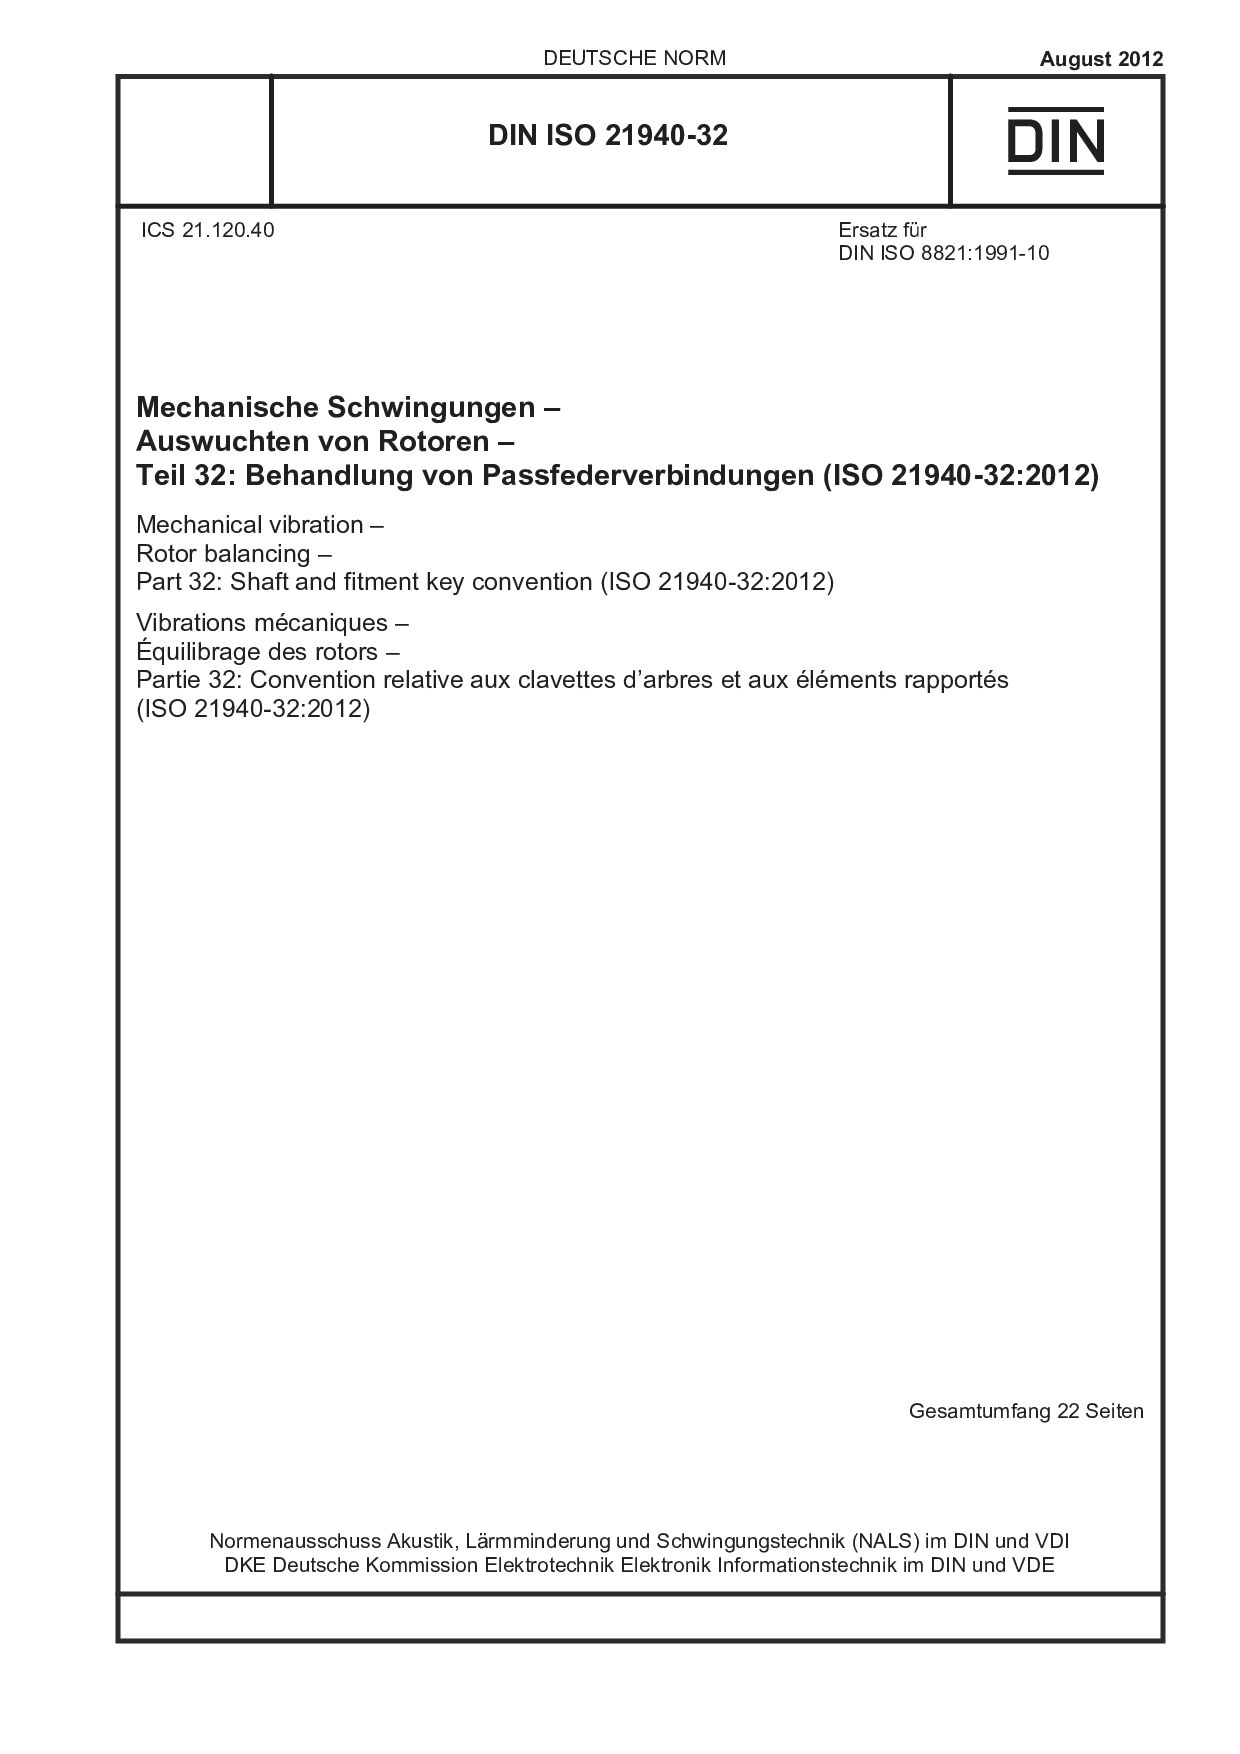 DIN ISO 21940-32:2012封面图